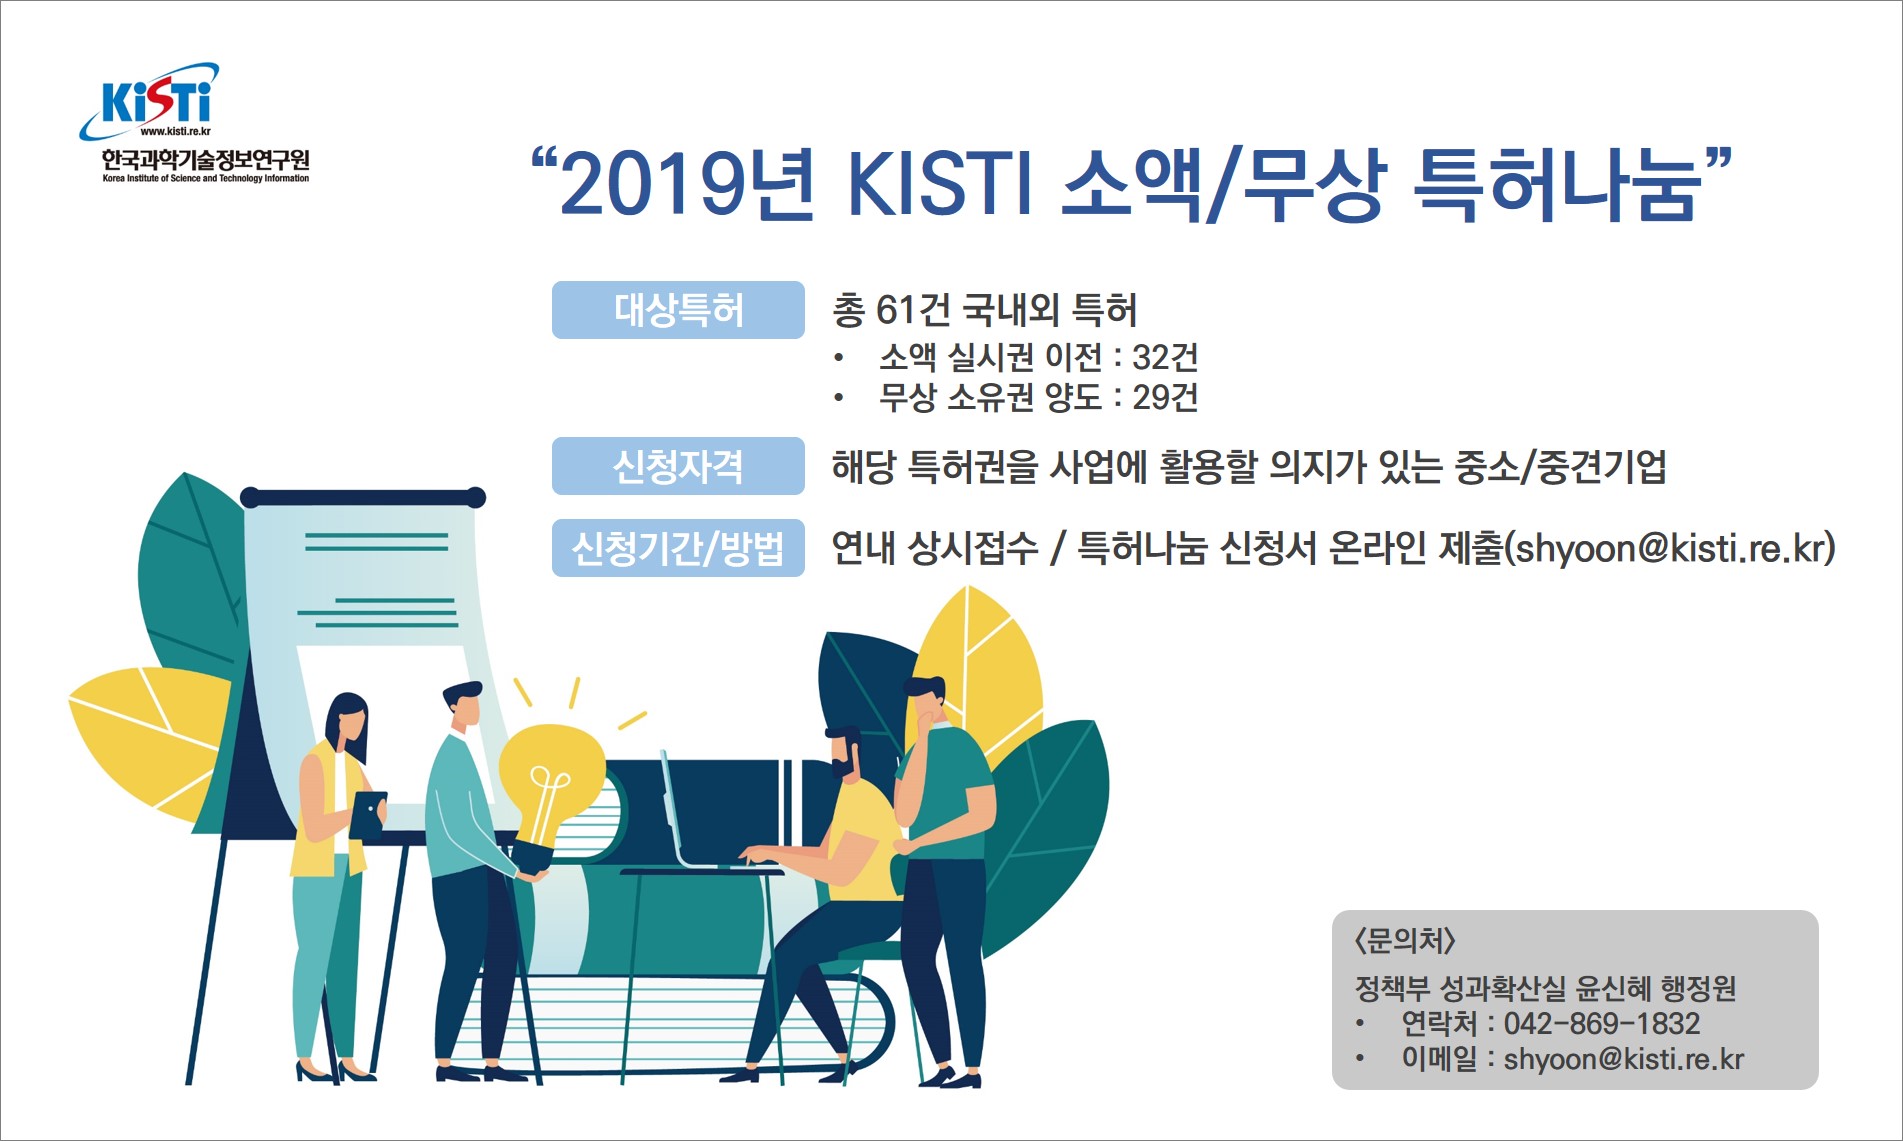 2019년 KISTI 소액/무상 특허나눔 안내. 자세한 내용 본문 참조.